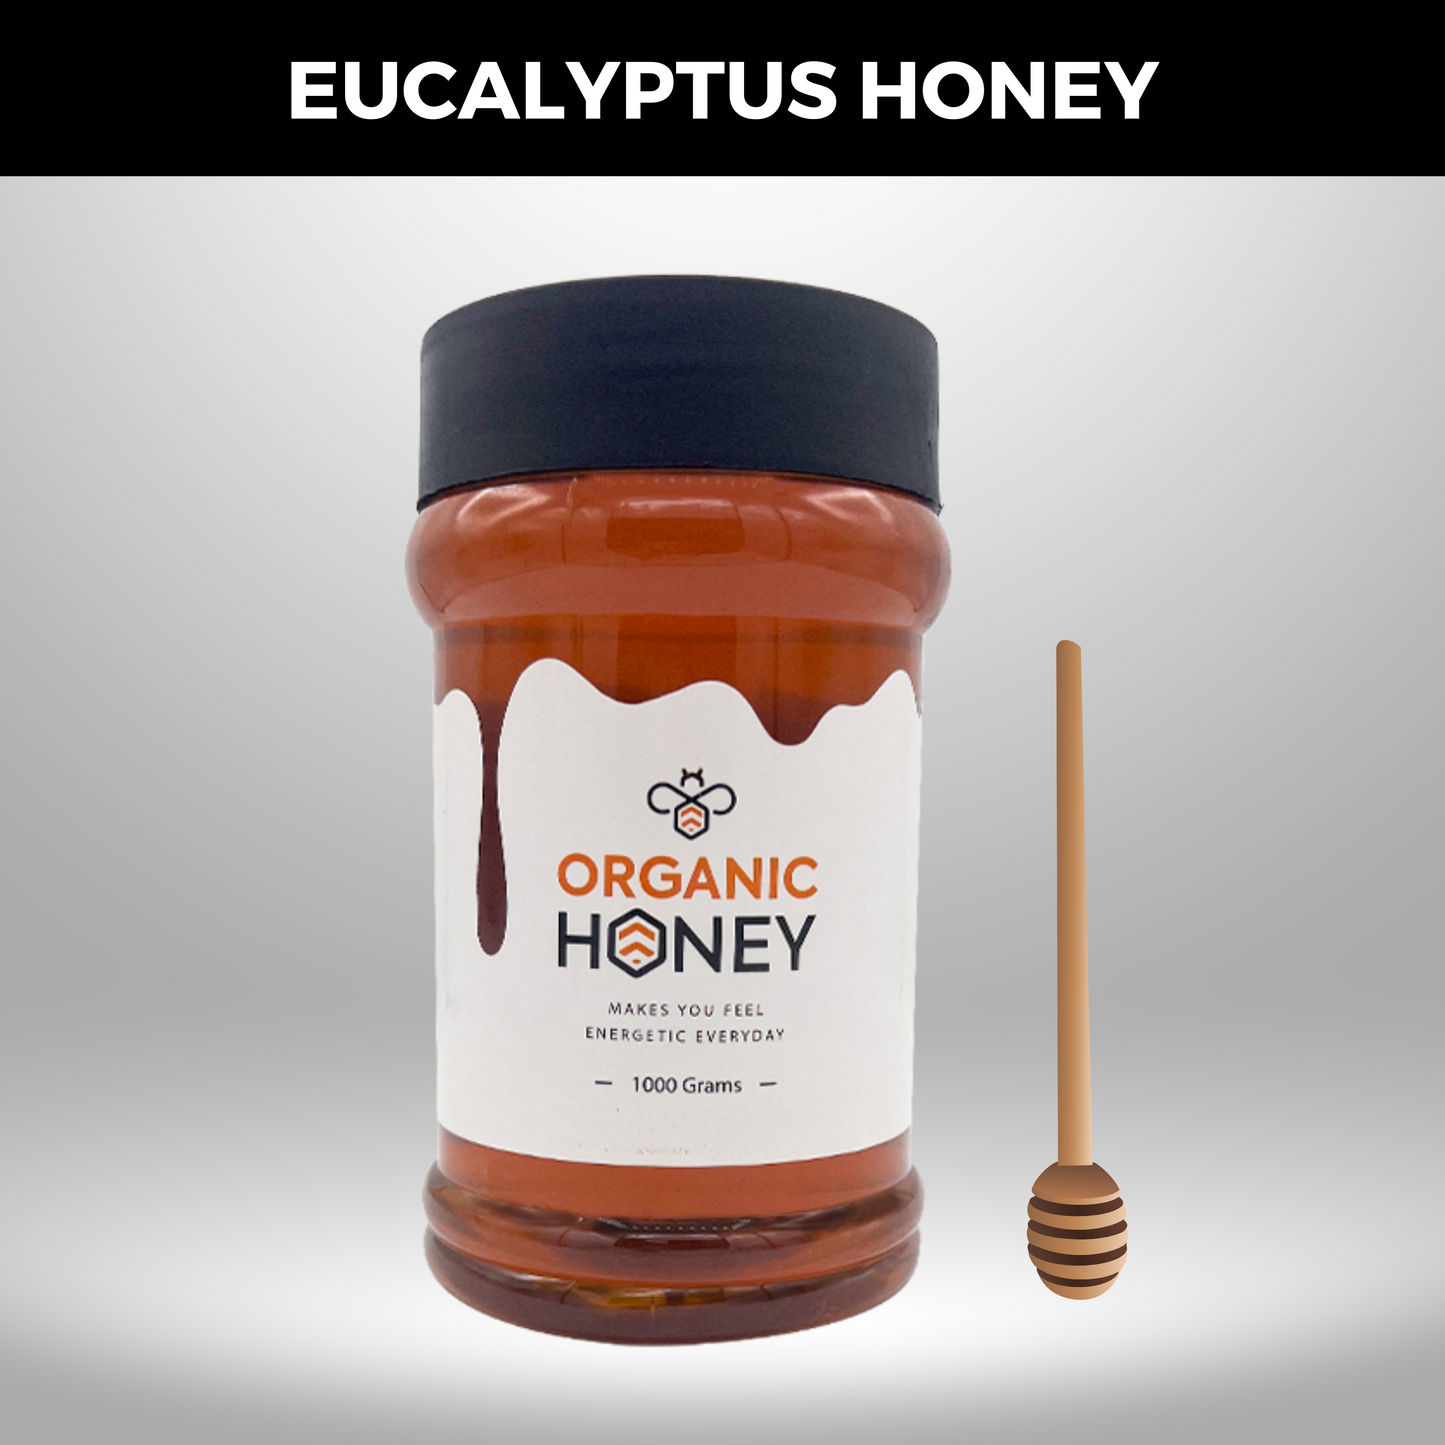 Sidr & Eucalyptus Honey - Pack of 2 kg Bee Honey عسل الخالص